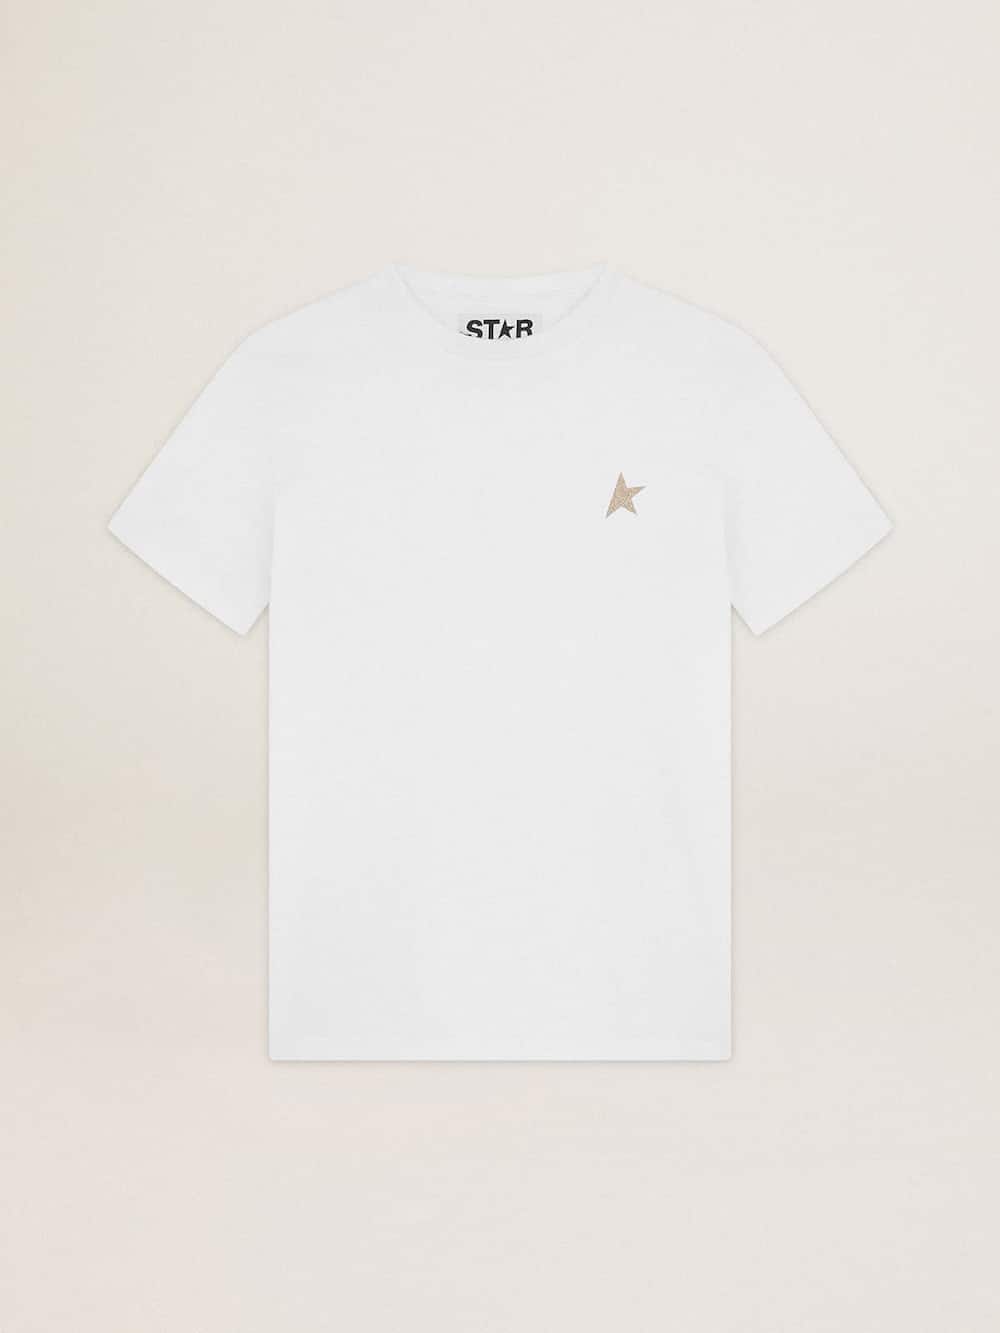 Golden Goose - T-shirt bianca Collezione Star con stella in glitter dorati sul davanti in 